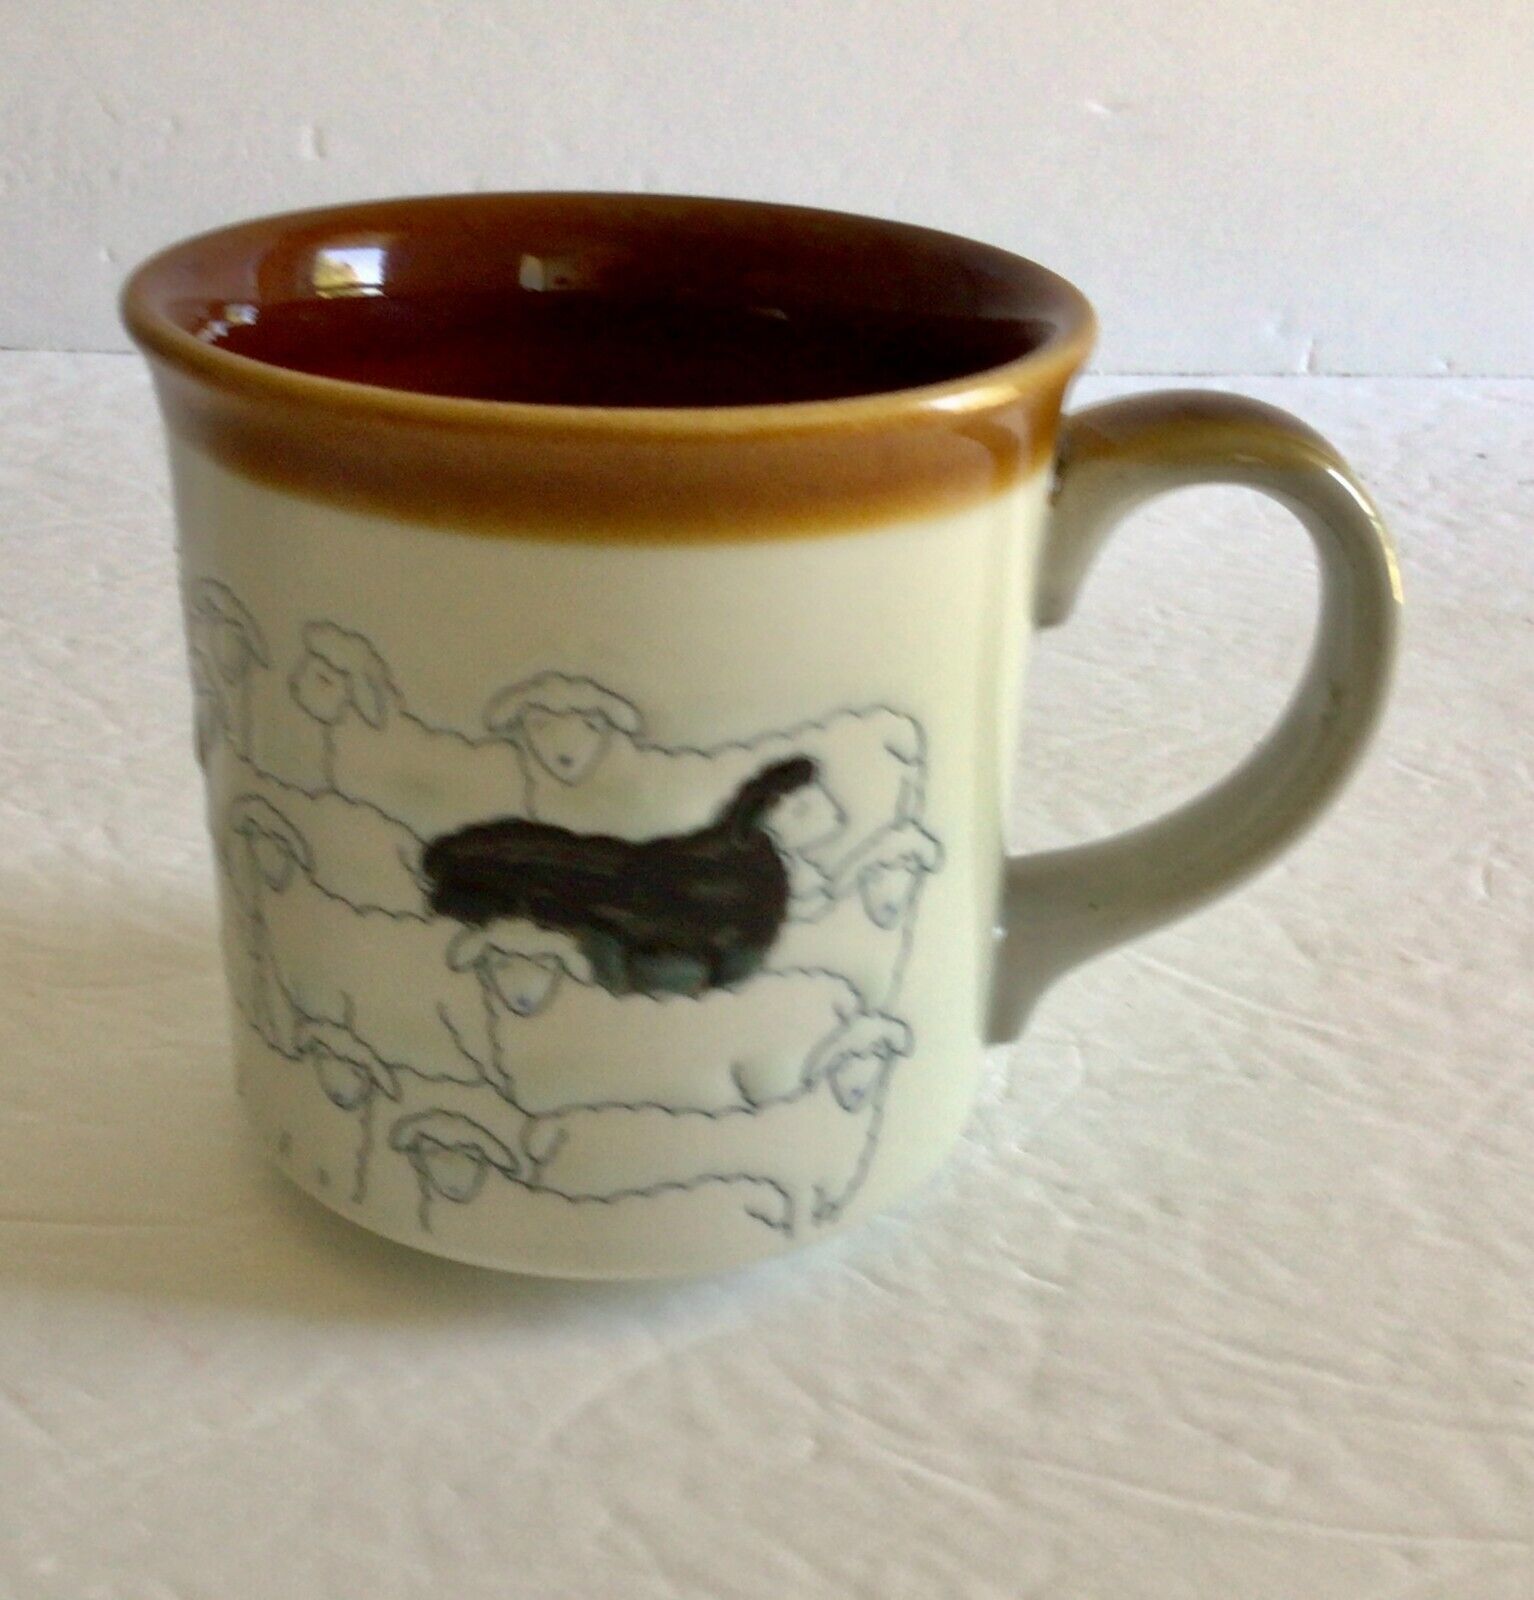 Vintage Otagiri Black Sheep Mug Ceramic Coffee Tea Cup Embossed Japan